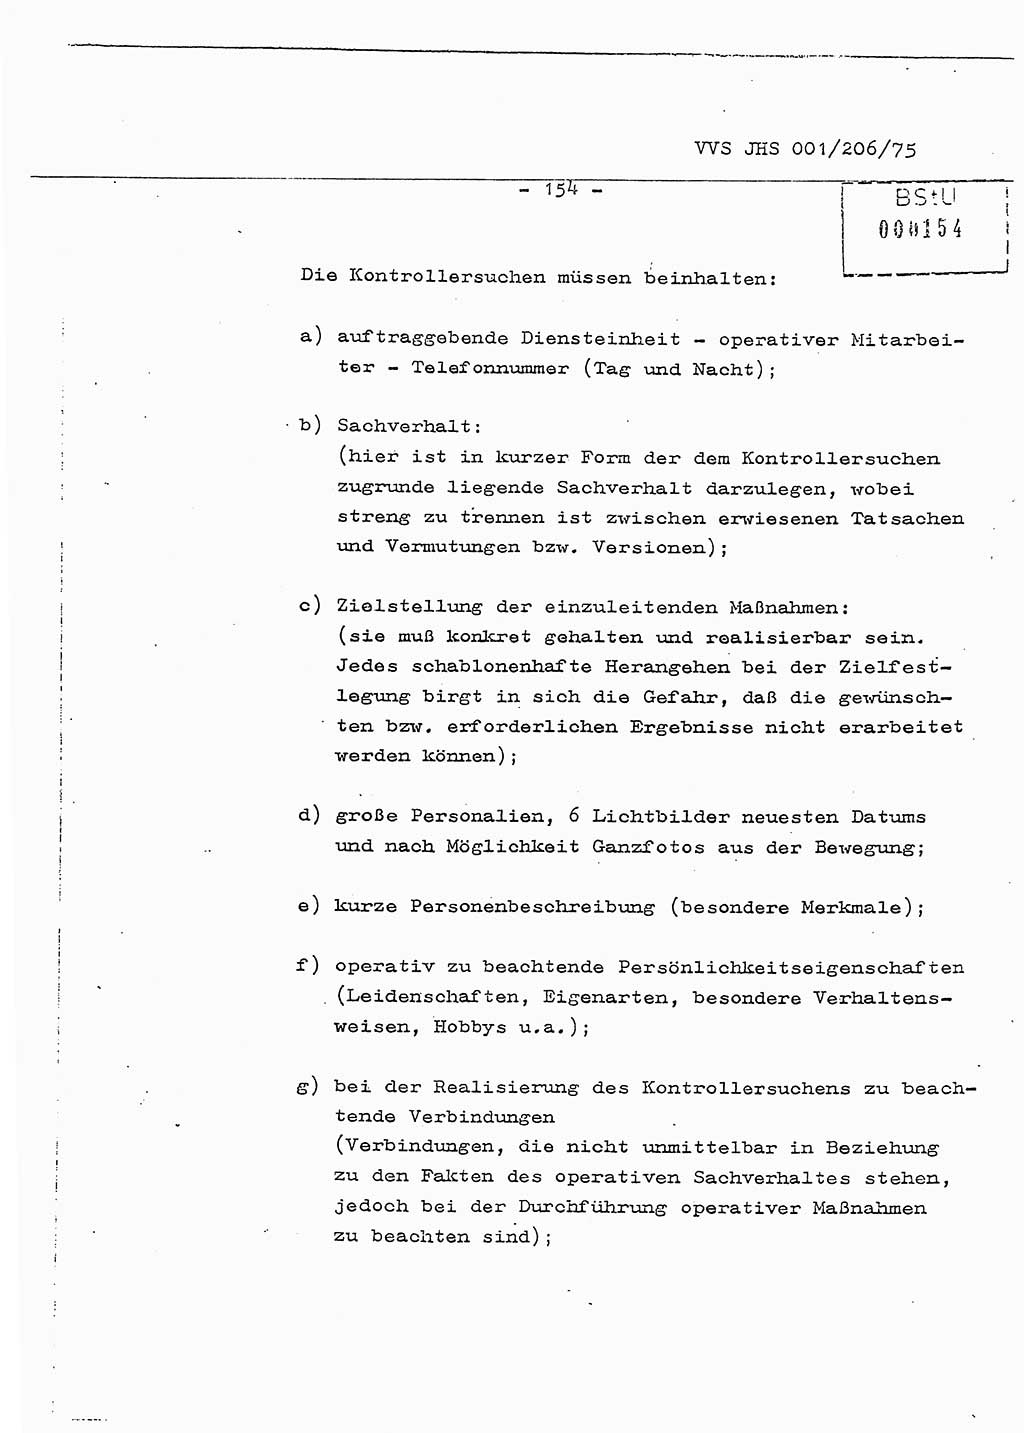 Dissertation Generalmajor Manfred Hummitzsch (Leiter der BV Leipzig), Generalmajor Heinz Fiedler (HA Ⅵ), Oberst Rolf Fister (HA Ⅸ), Ministerium für Staatssicherheit (MfS) [Deutsche Demokratische Republik (DDR)], Juristische Hochschule (JHS), Vertrauliche Verschlußsache (VVS) 001-206/75, Potsdam 1975, Seite 154 (Diss. MfS DDR JHS VVS 001-206/75 1975, S. 154)